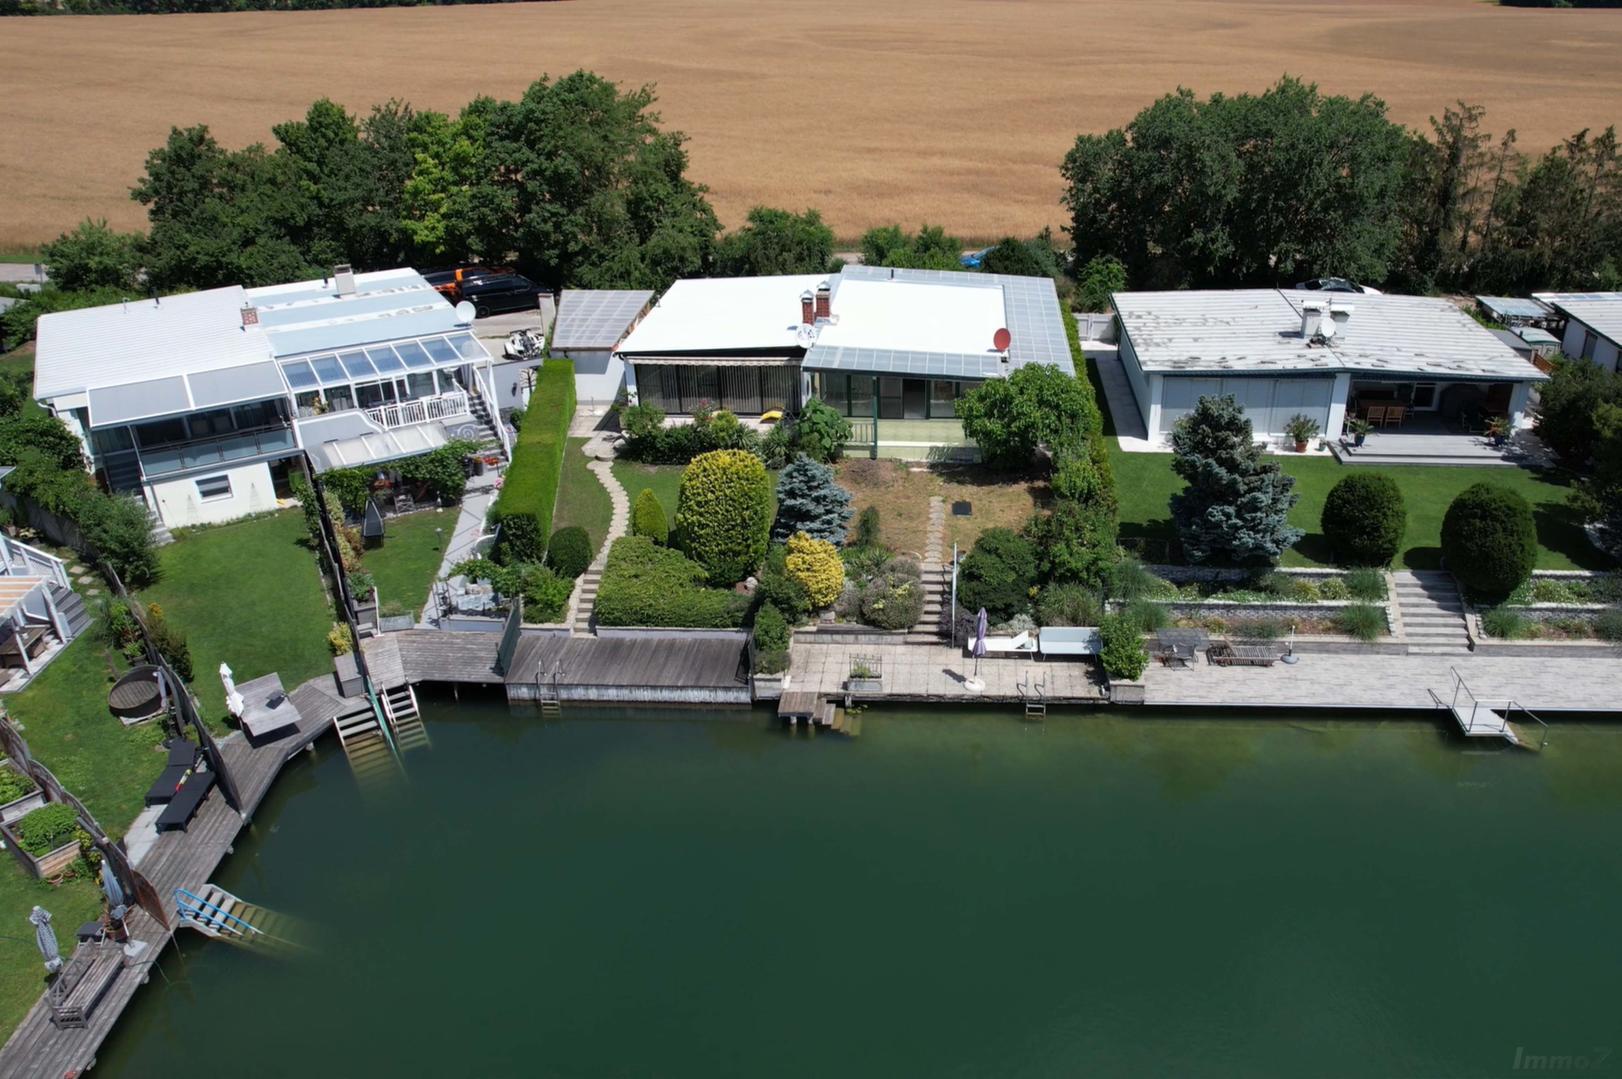 Haus zu kaufen: Kienersee ll, 2325 Velm - Ferienhaus am See